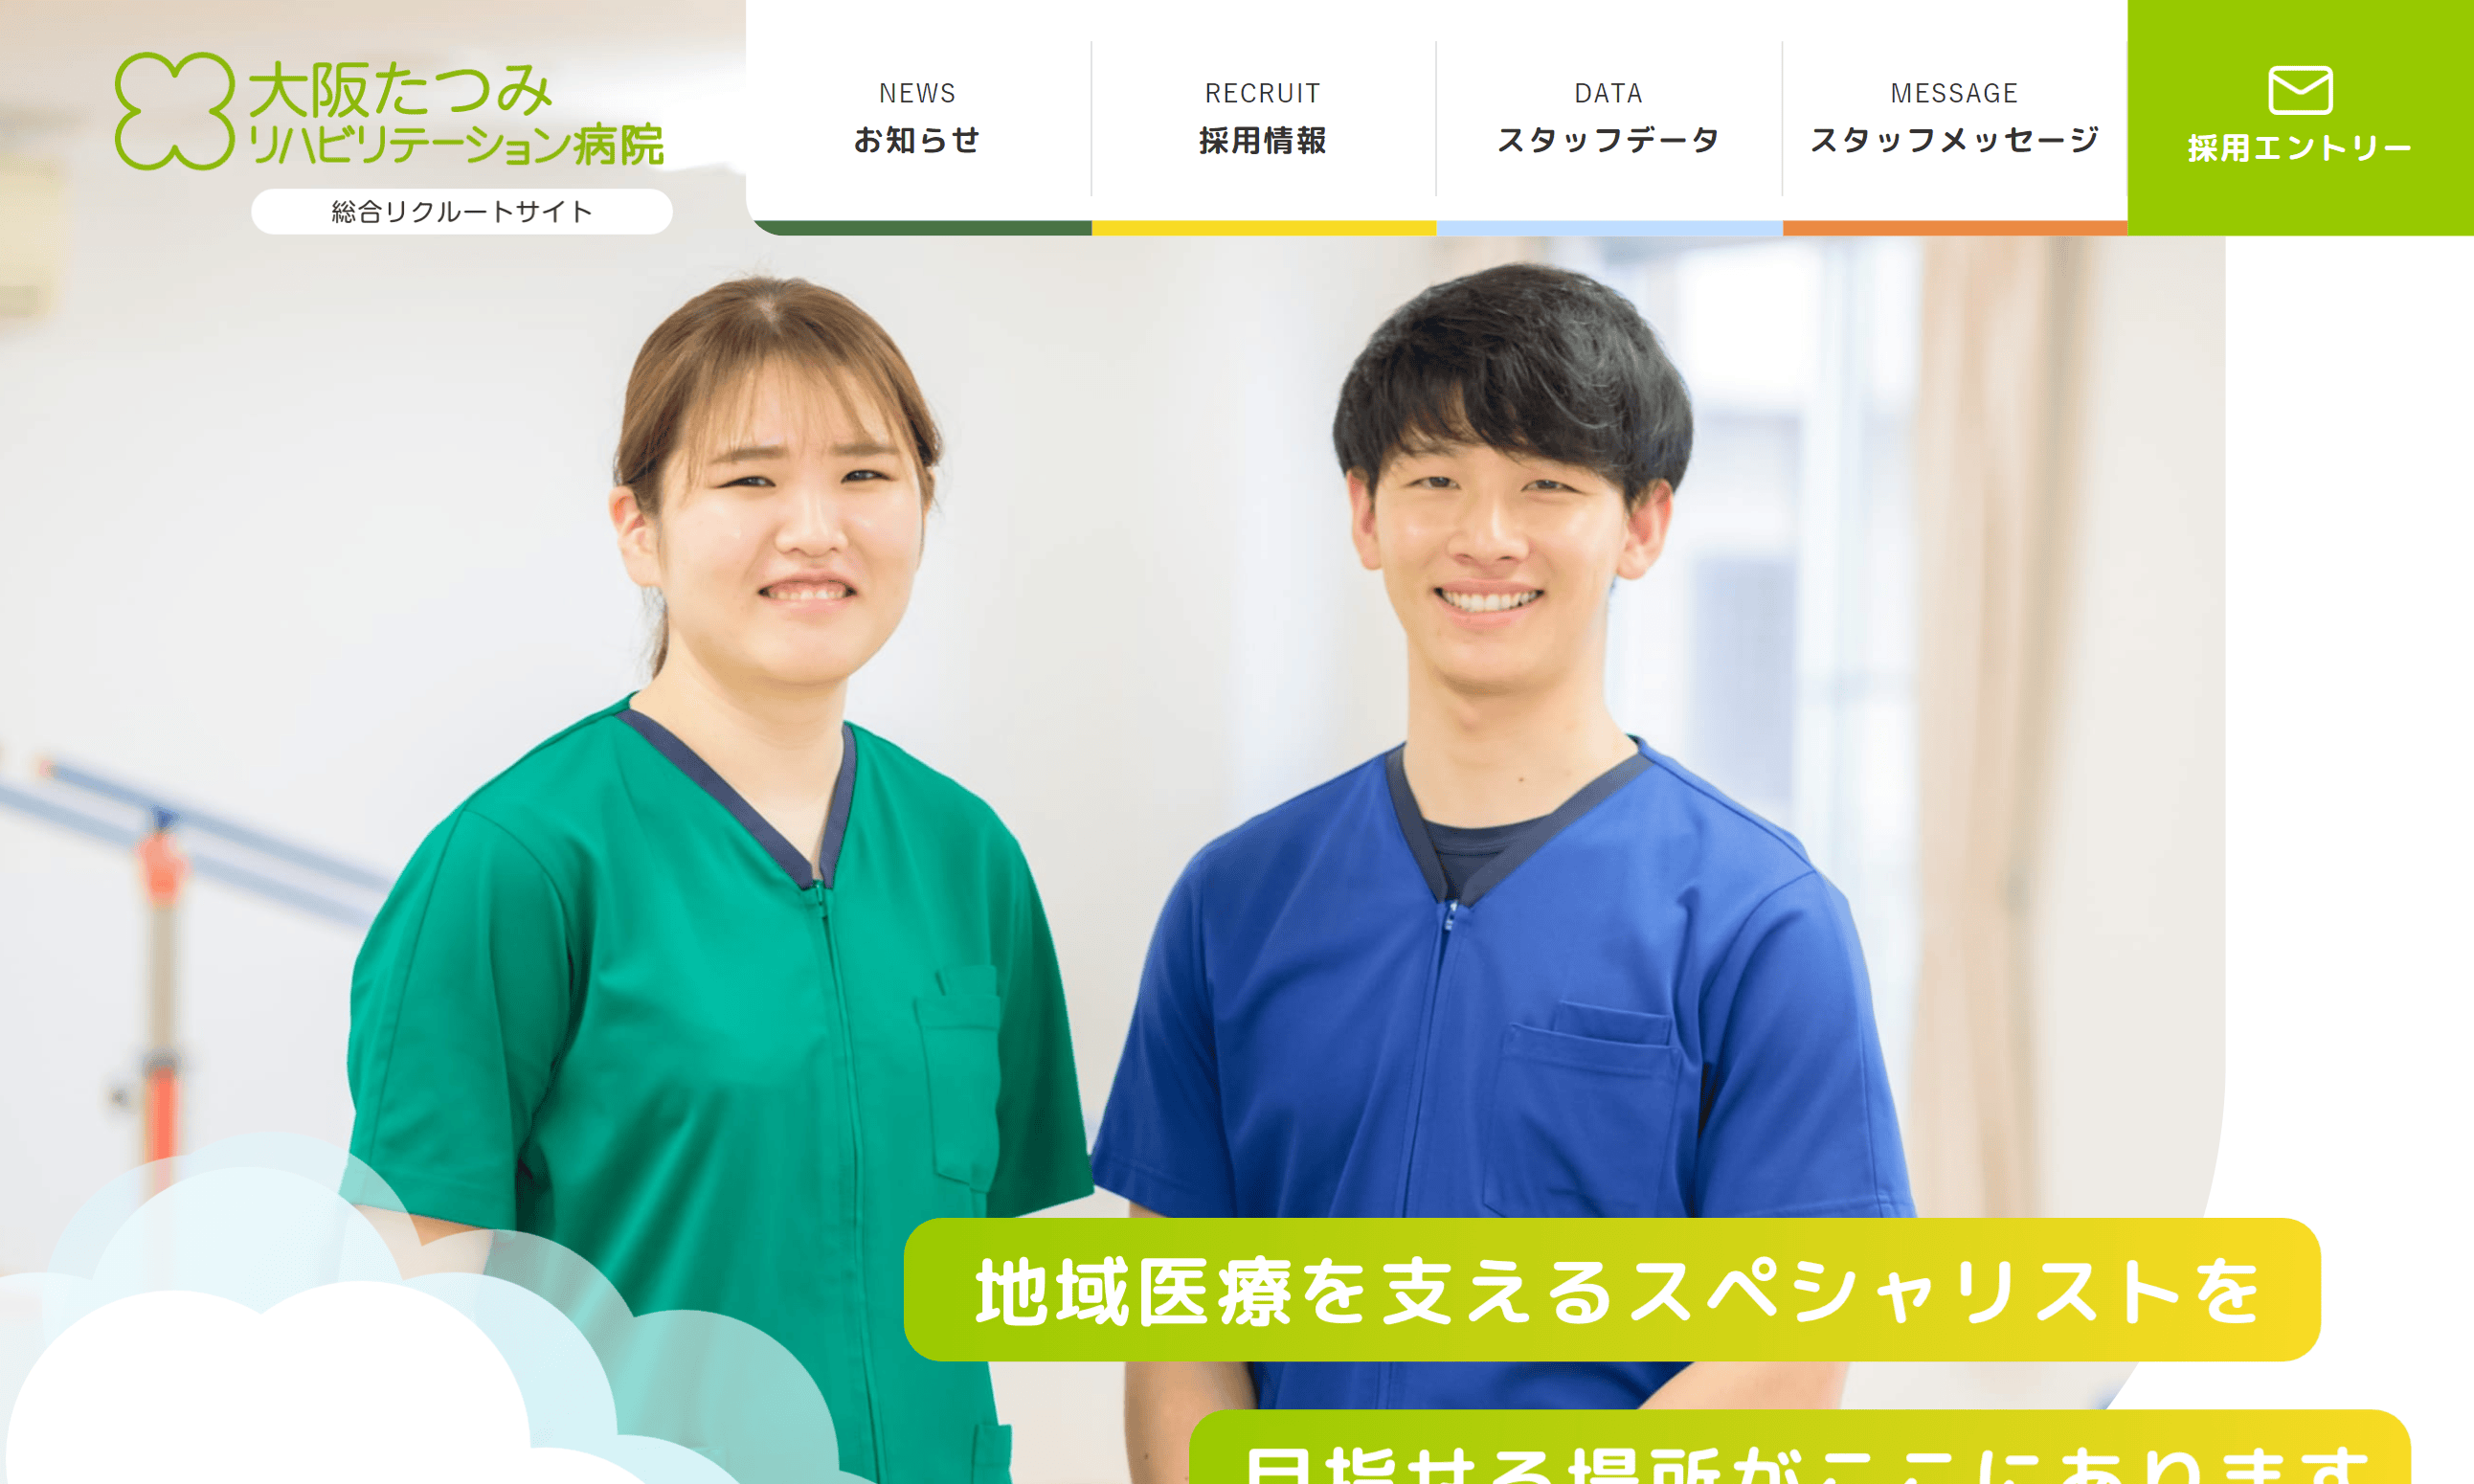 医療法人せいわ会 大阪たつみリハビリテーション病院 総合リクルートサイト